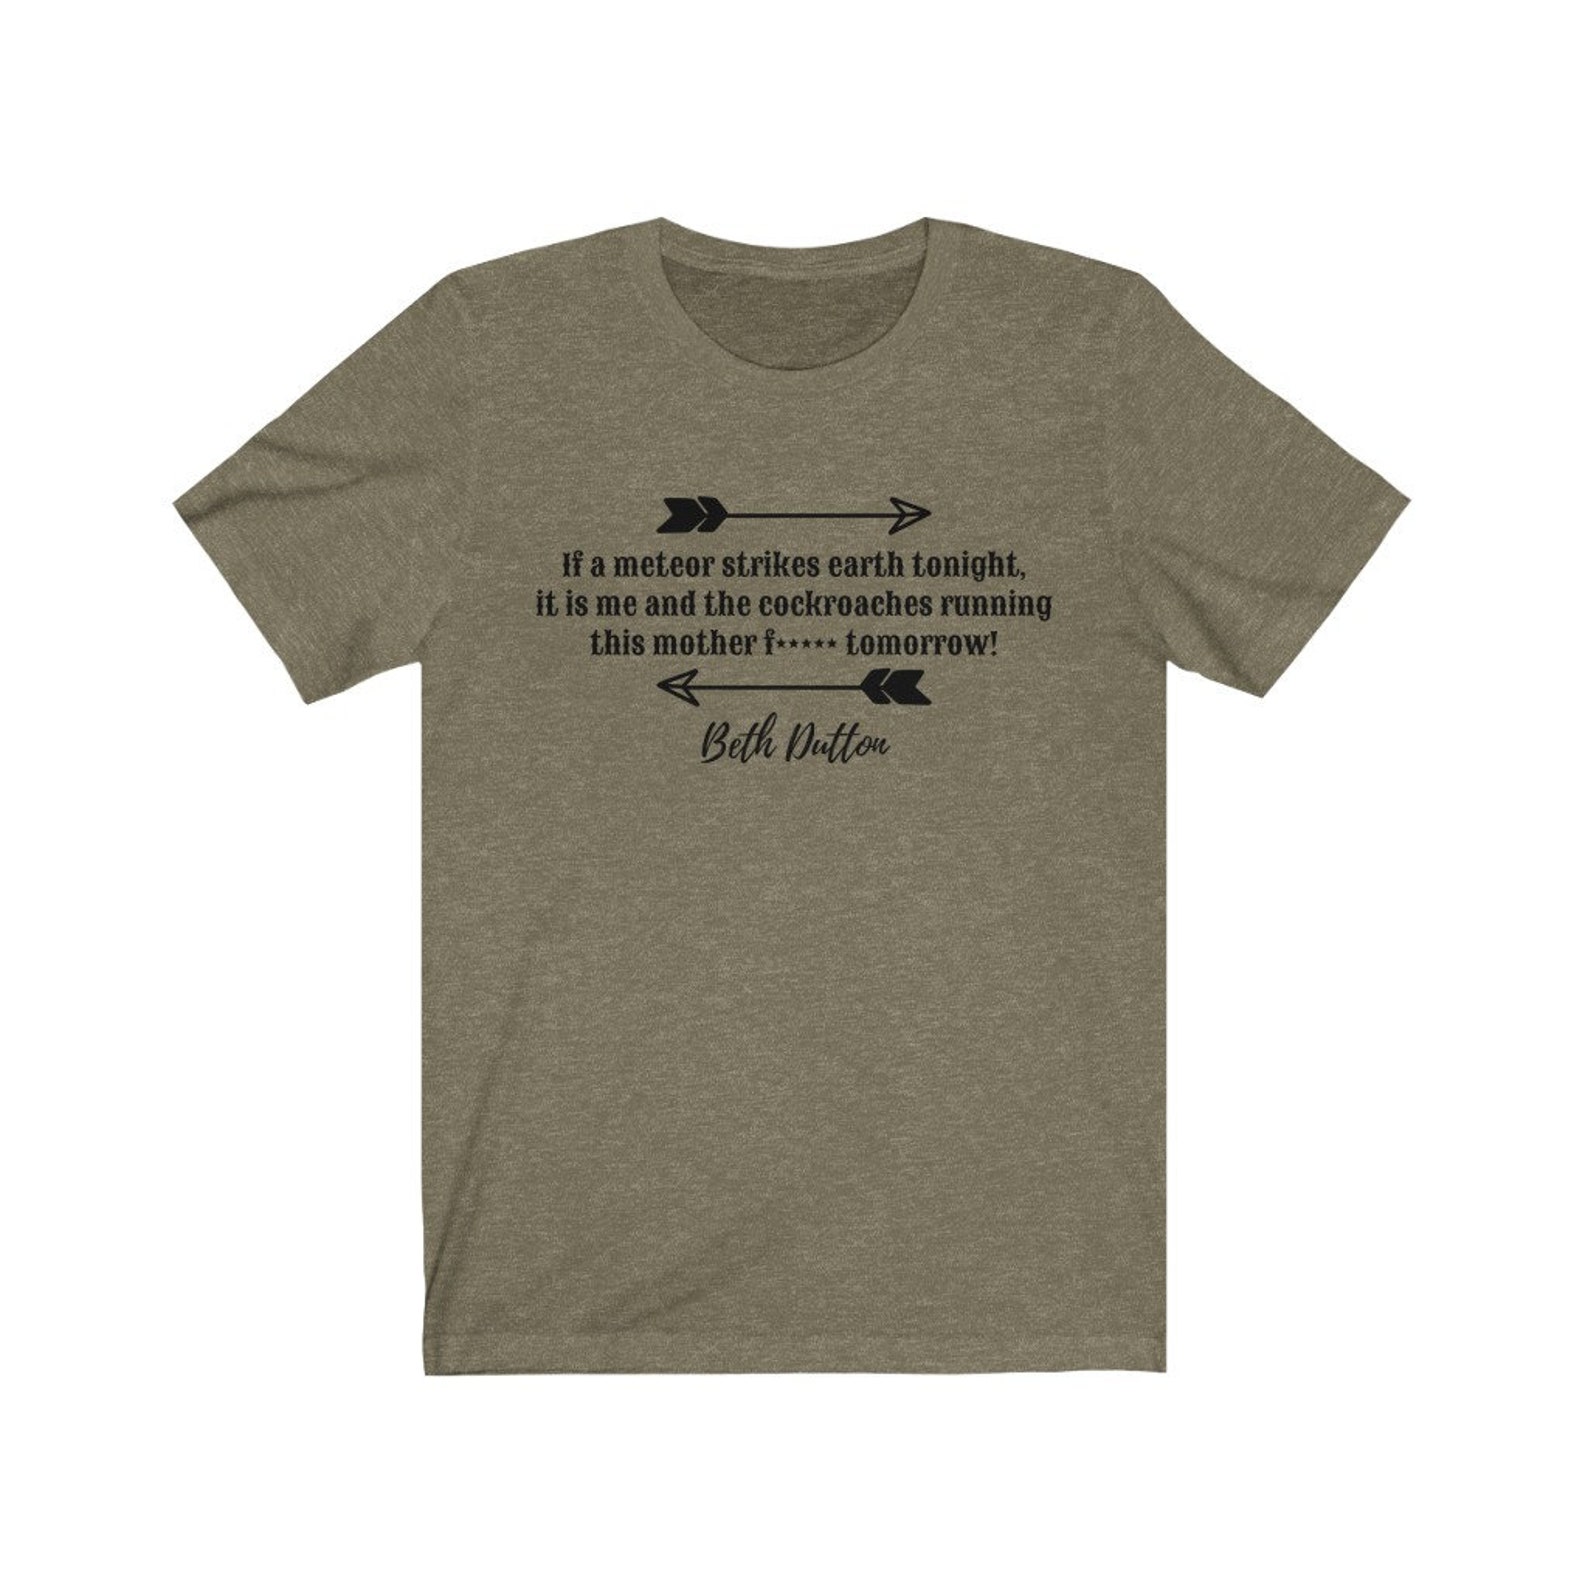 Beth Dutton Tshirt Yellowstone TV Series T-shirt - Etsy